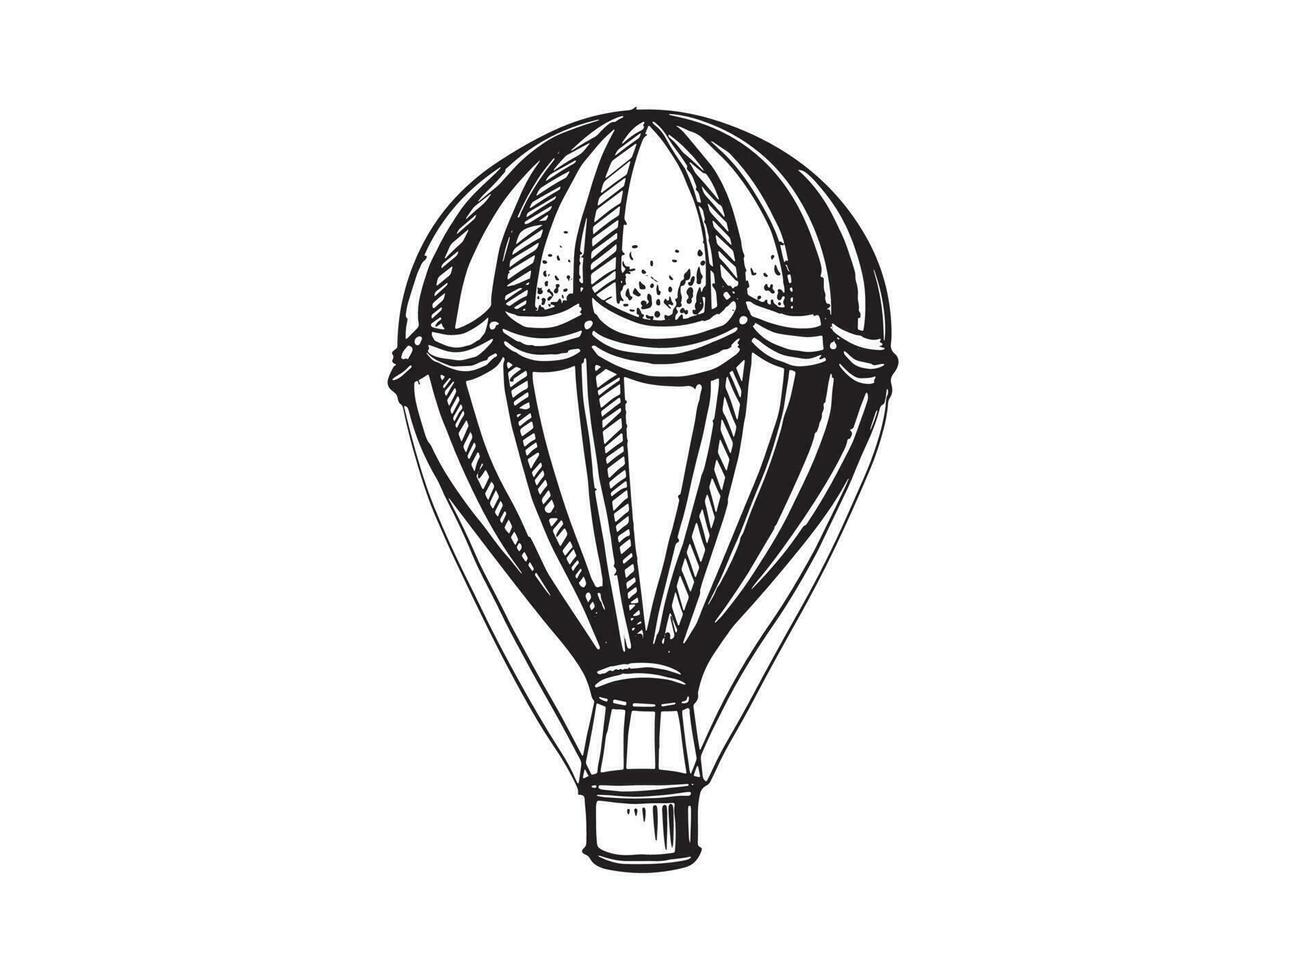 Luft Ballon, Hand gezeichnet Illustrationen, Vektor. vektor